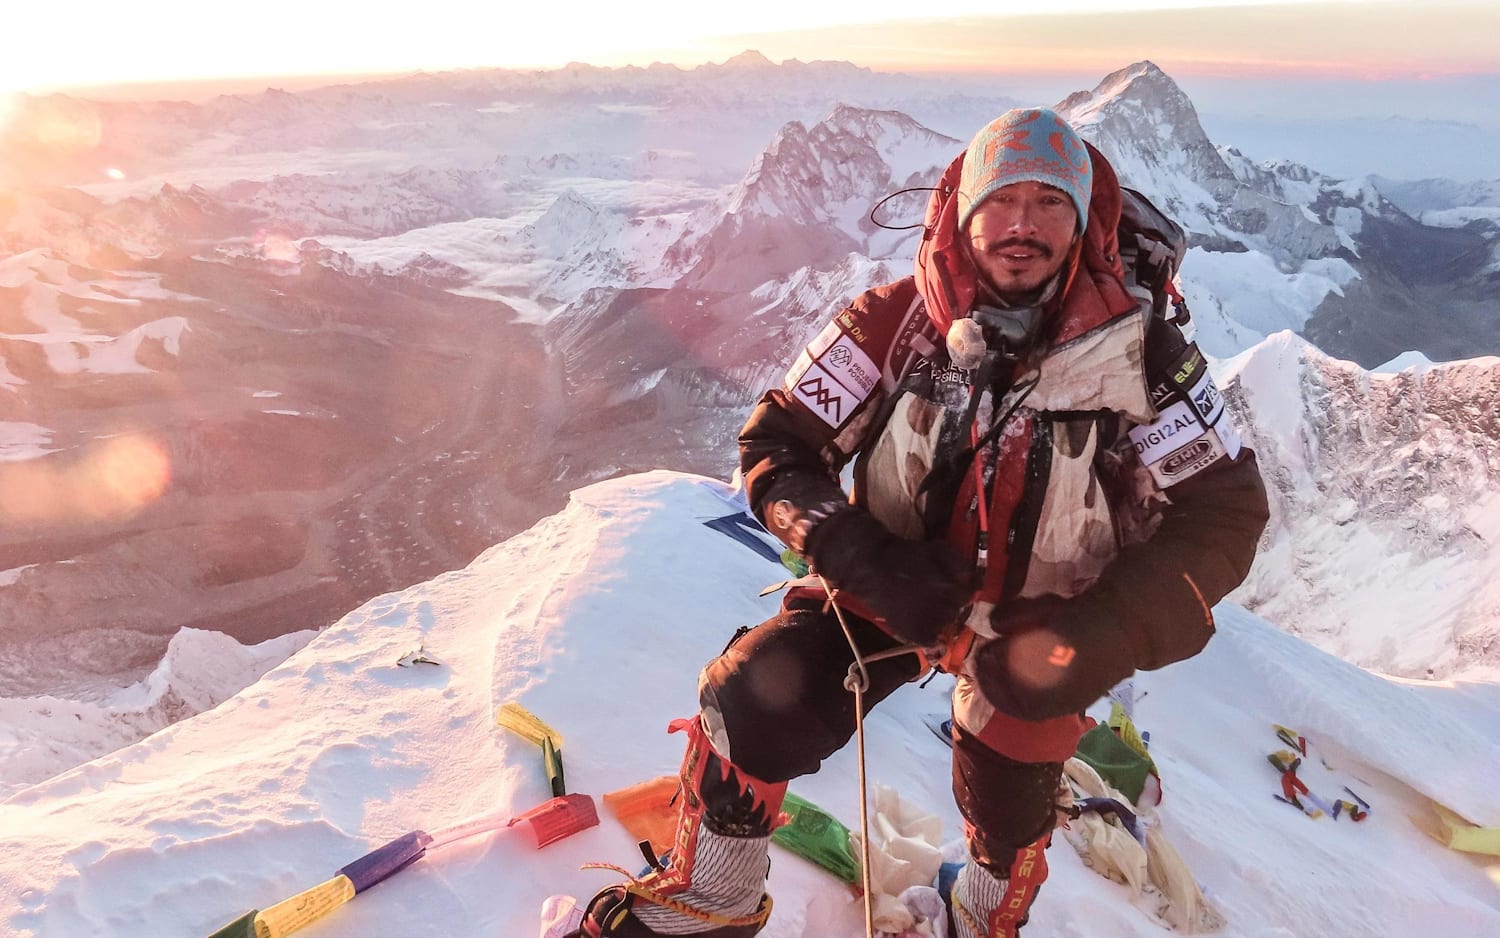 ニルマル プルジャ 8 000m級 14峰 世界最速登頂記録更新 登山 レッドブル